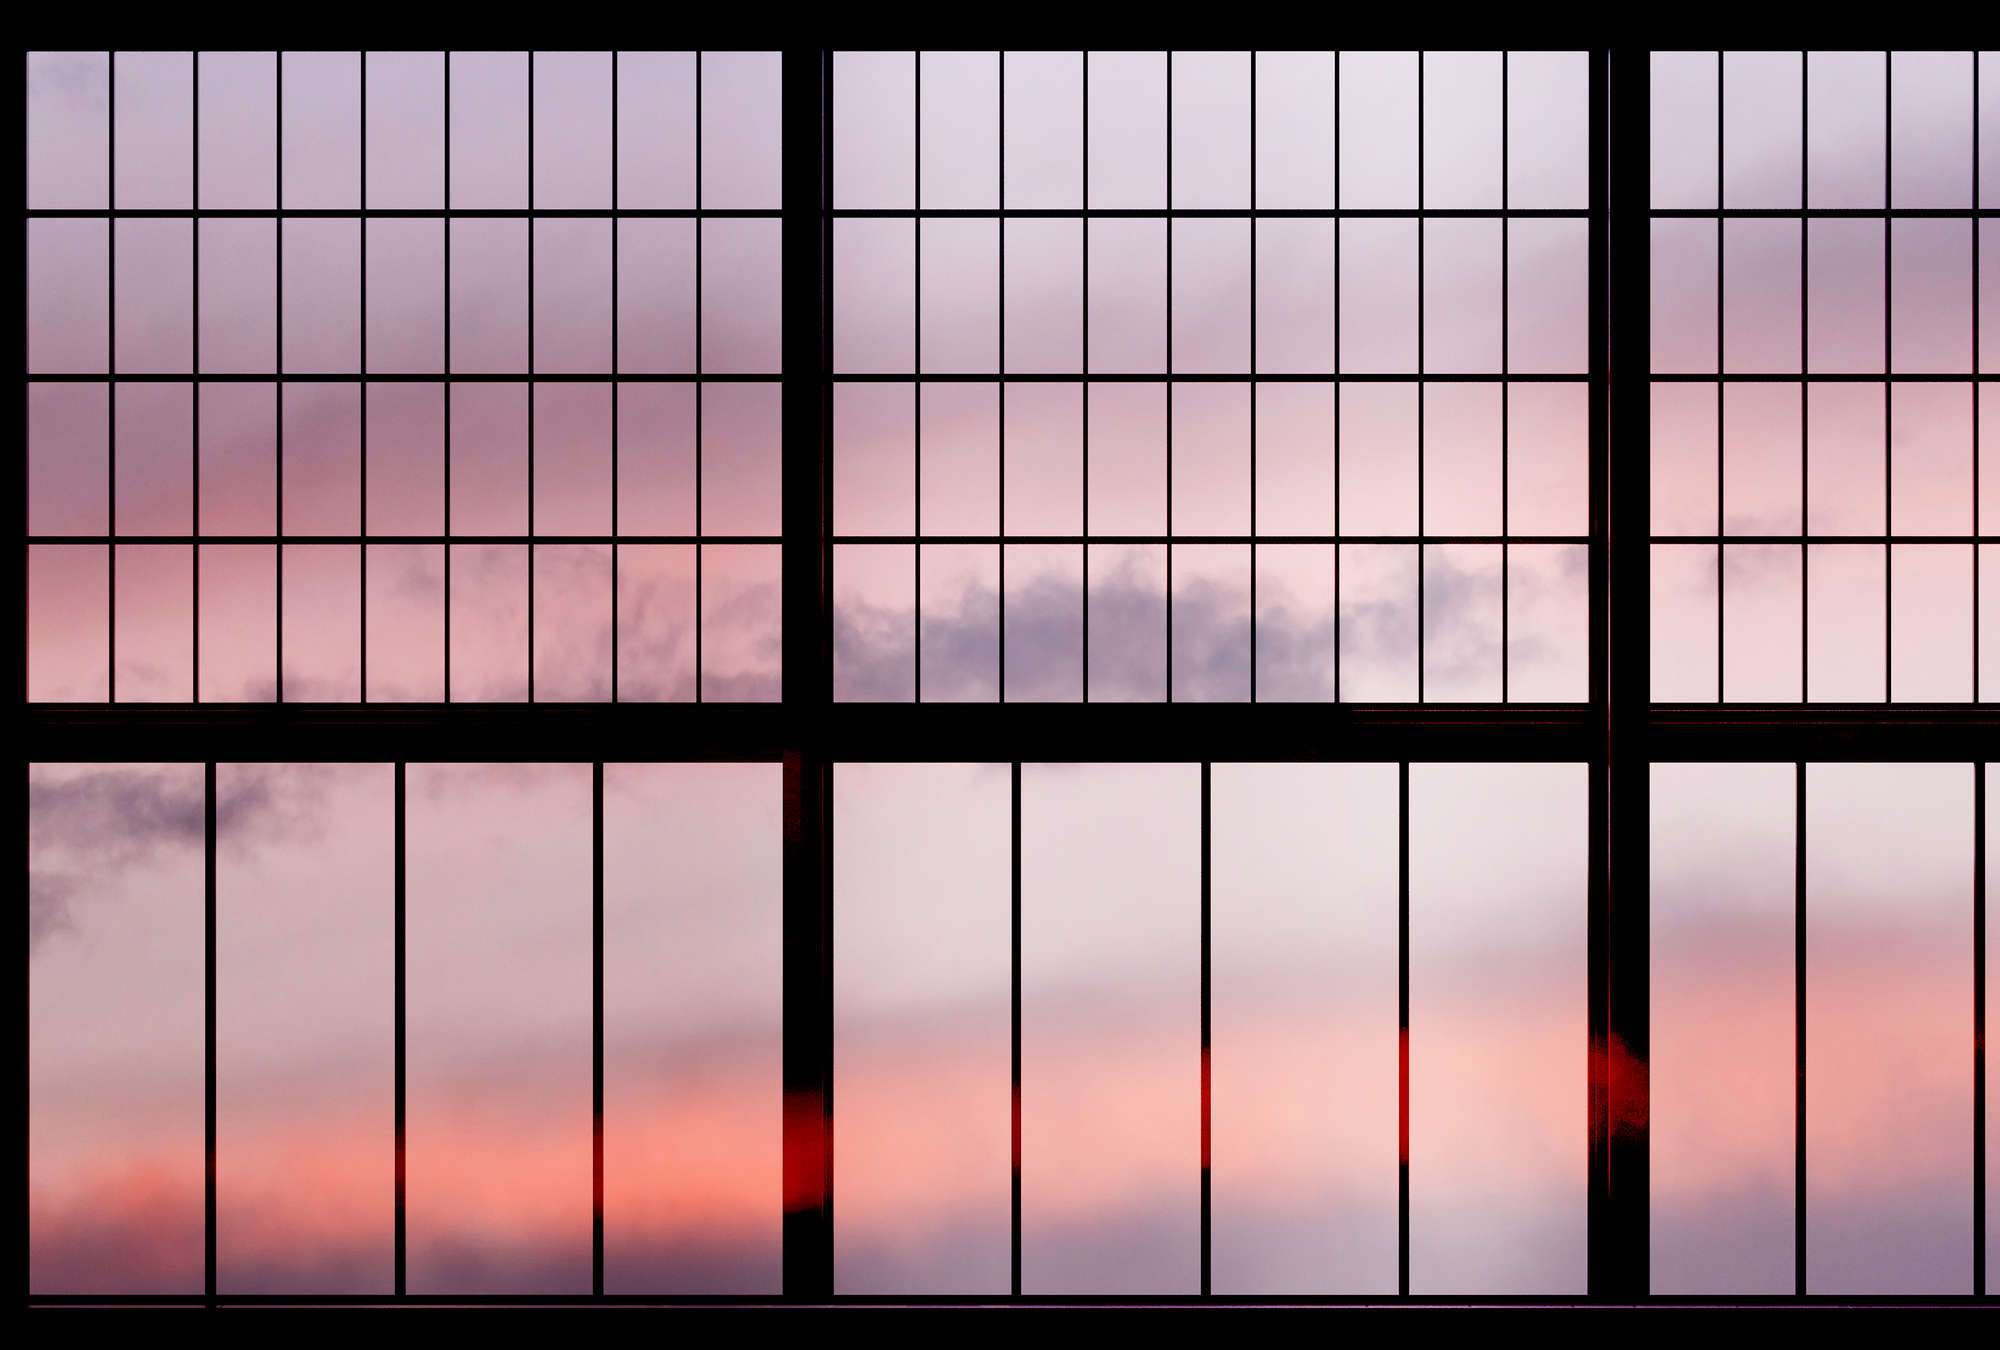             Sky 1 - Window Wallpaper Sunrise View - Roze, Zwart | Matt Smooth Vliesbehang
        